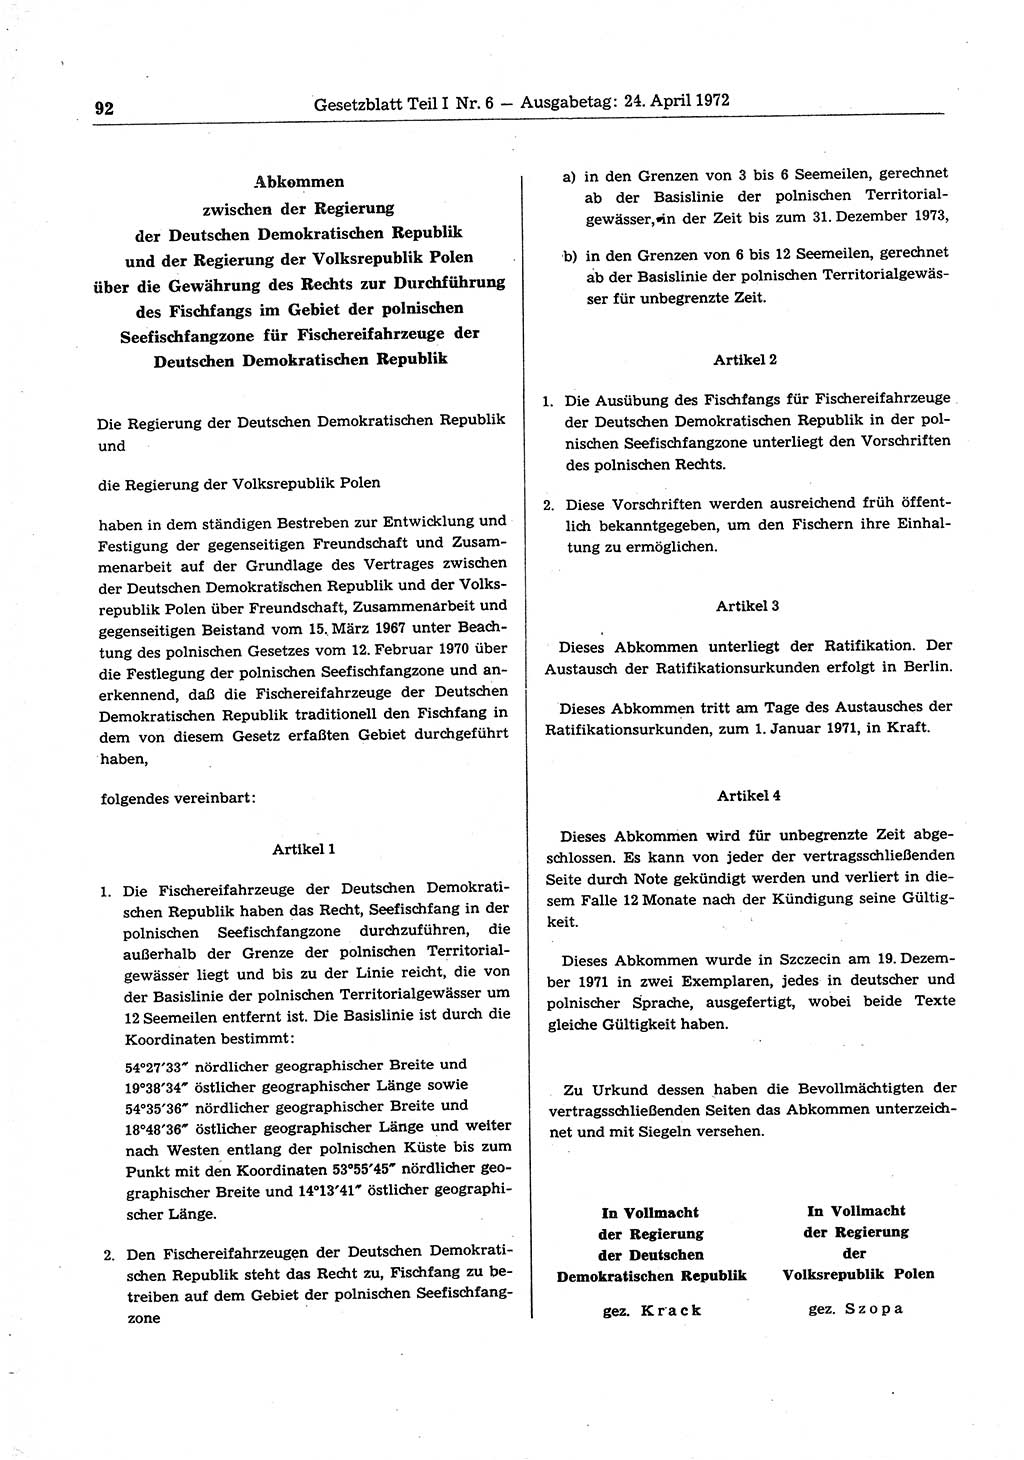 Gesetzblatt (GBl.) der Deutschen Demokratischen Republik (DDR) Teil Ⅰ 1972, Seite 92 (GBl. DDR Ⅰ 1972, S. 92)